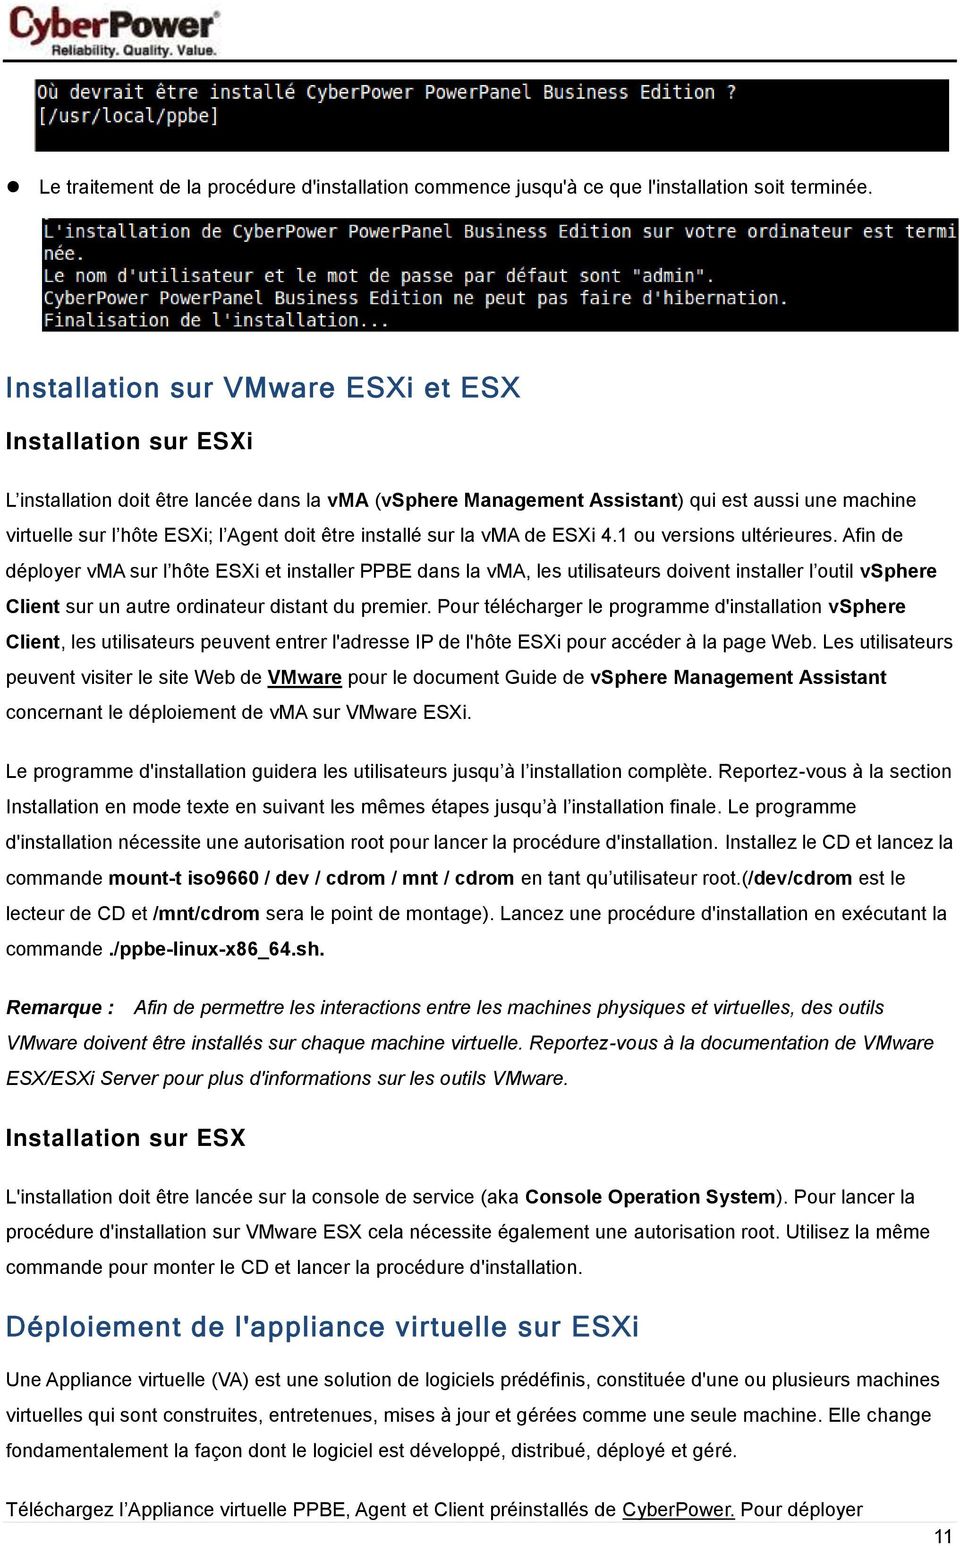 être installé sur la vma de ESXi 4.1 ou versions ultérieures.